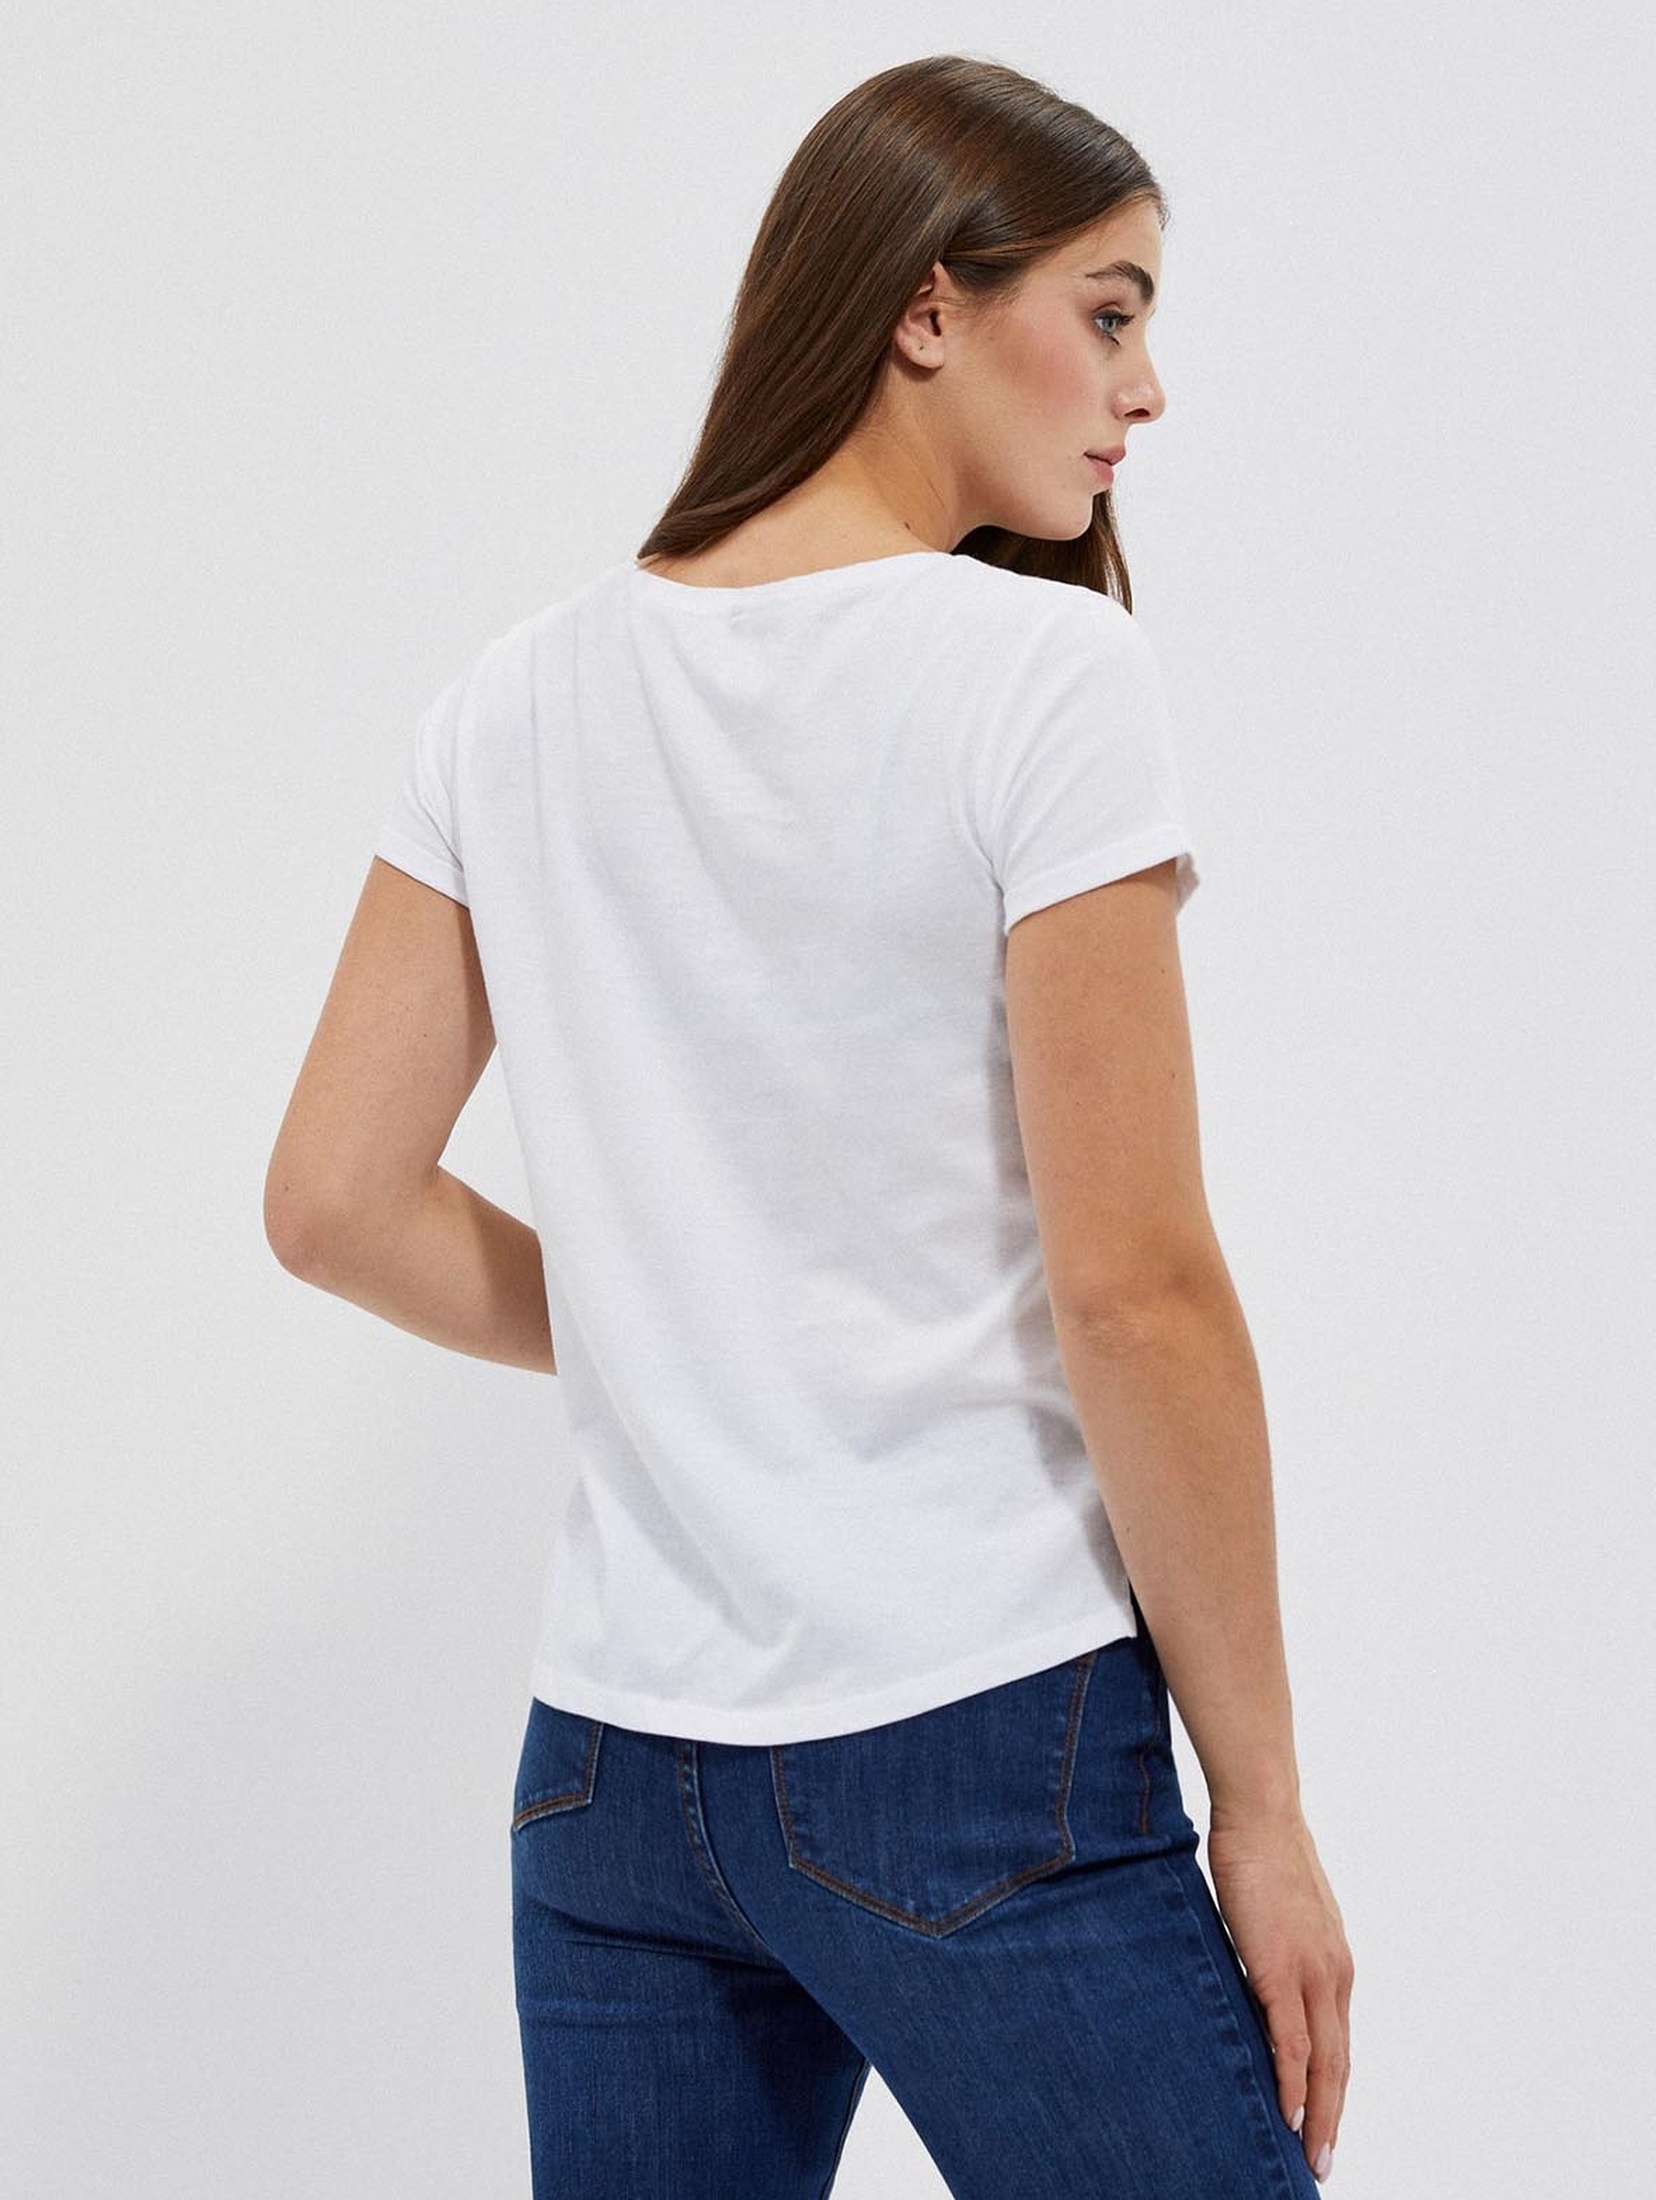 Bawełniany biały t-shirt damski z kieszonką